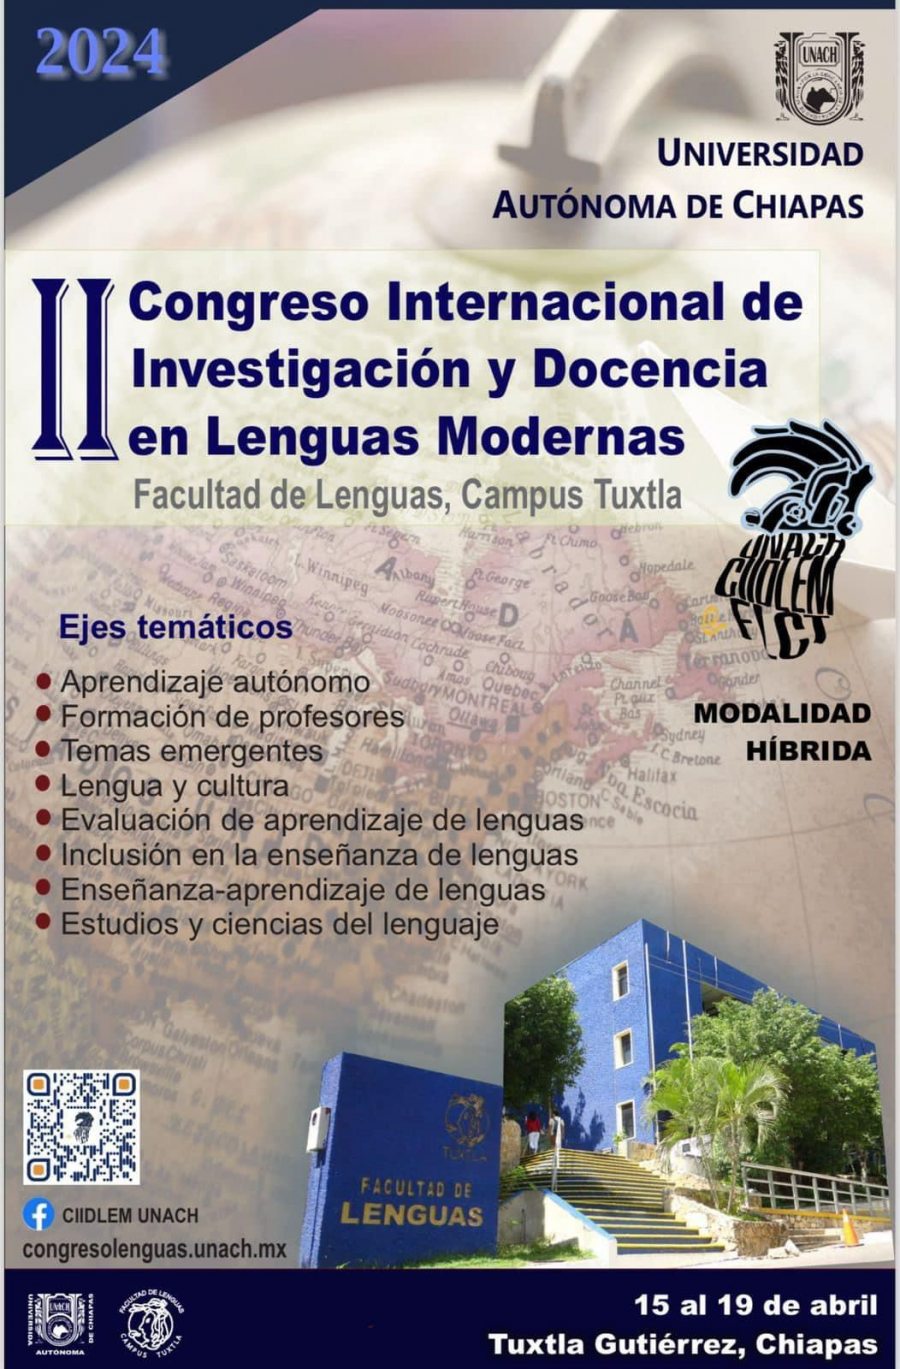 Realizará UNACH el ll Congreso Internacional de Investigación y Docencia en Lenguas Modernas